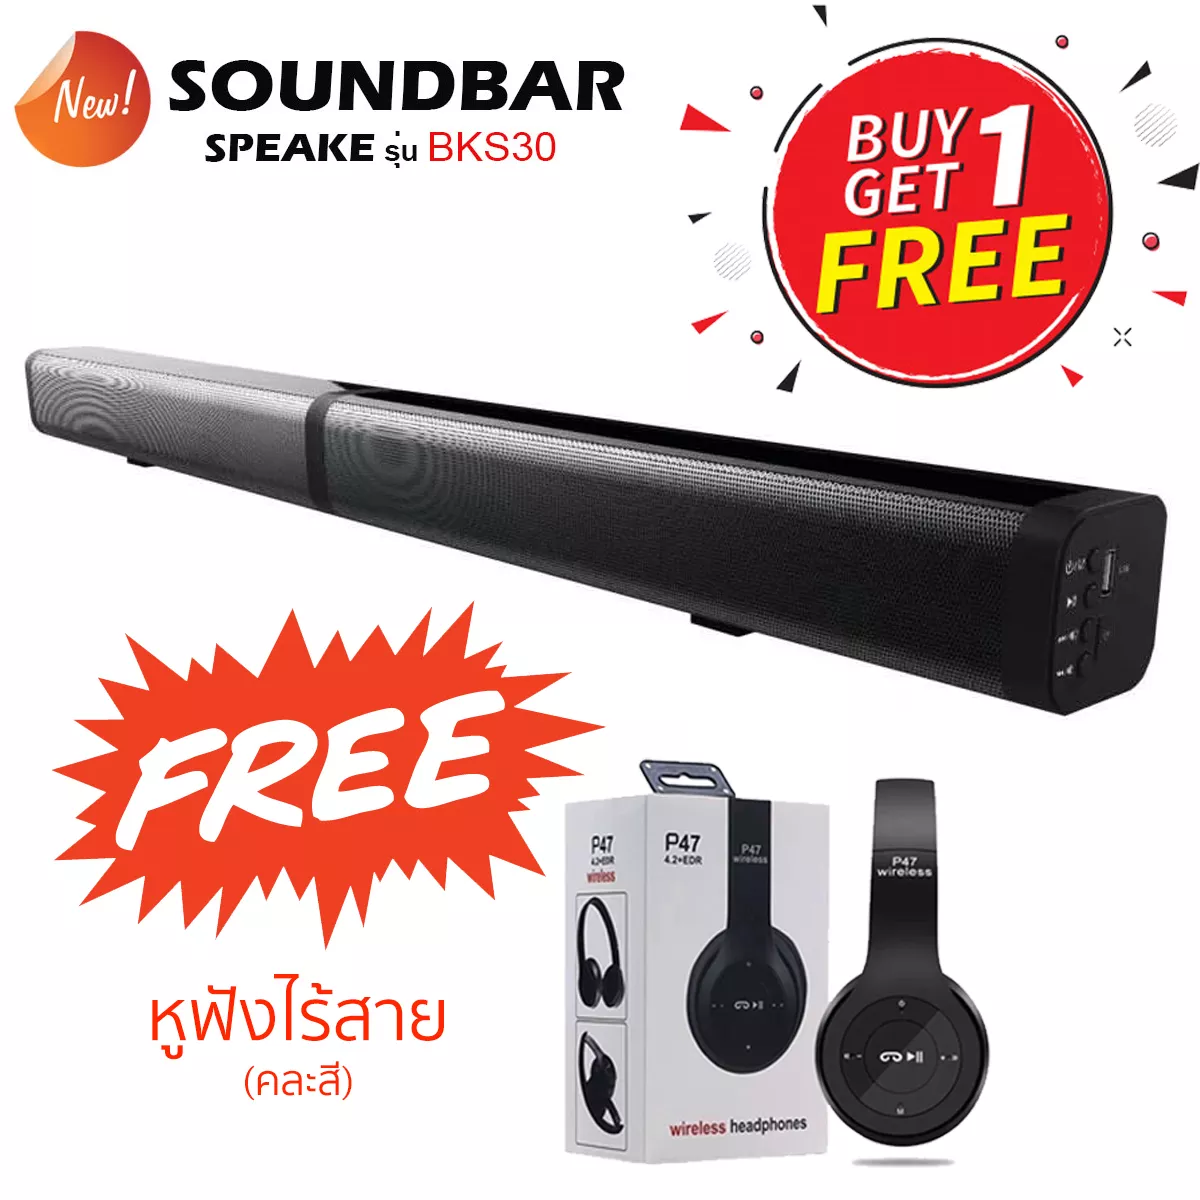 แถมฟรี!! หูฟังไร้สาย P47 ลำโพงซาวด์บาร์ Soundbar BKS-30 รุ่นใหม่ล่าสุด มียอดขายอันดับ1 ประกันศูนย์ไทย ขายถูกที่สุด